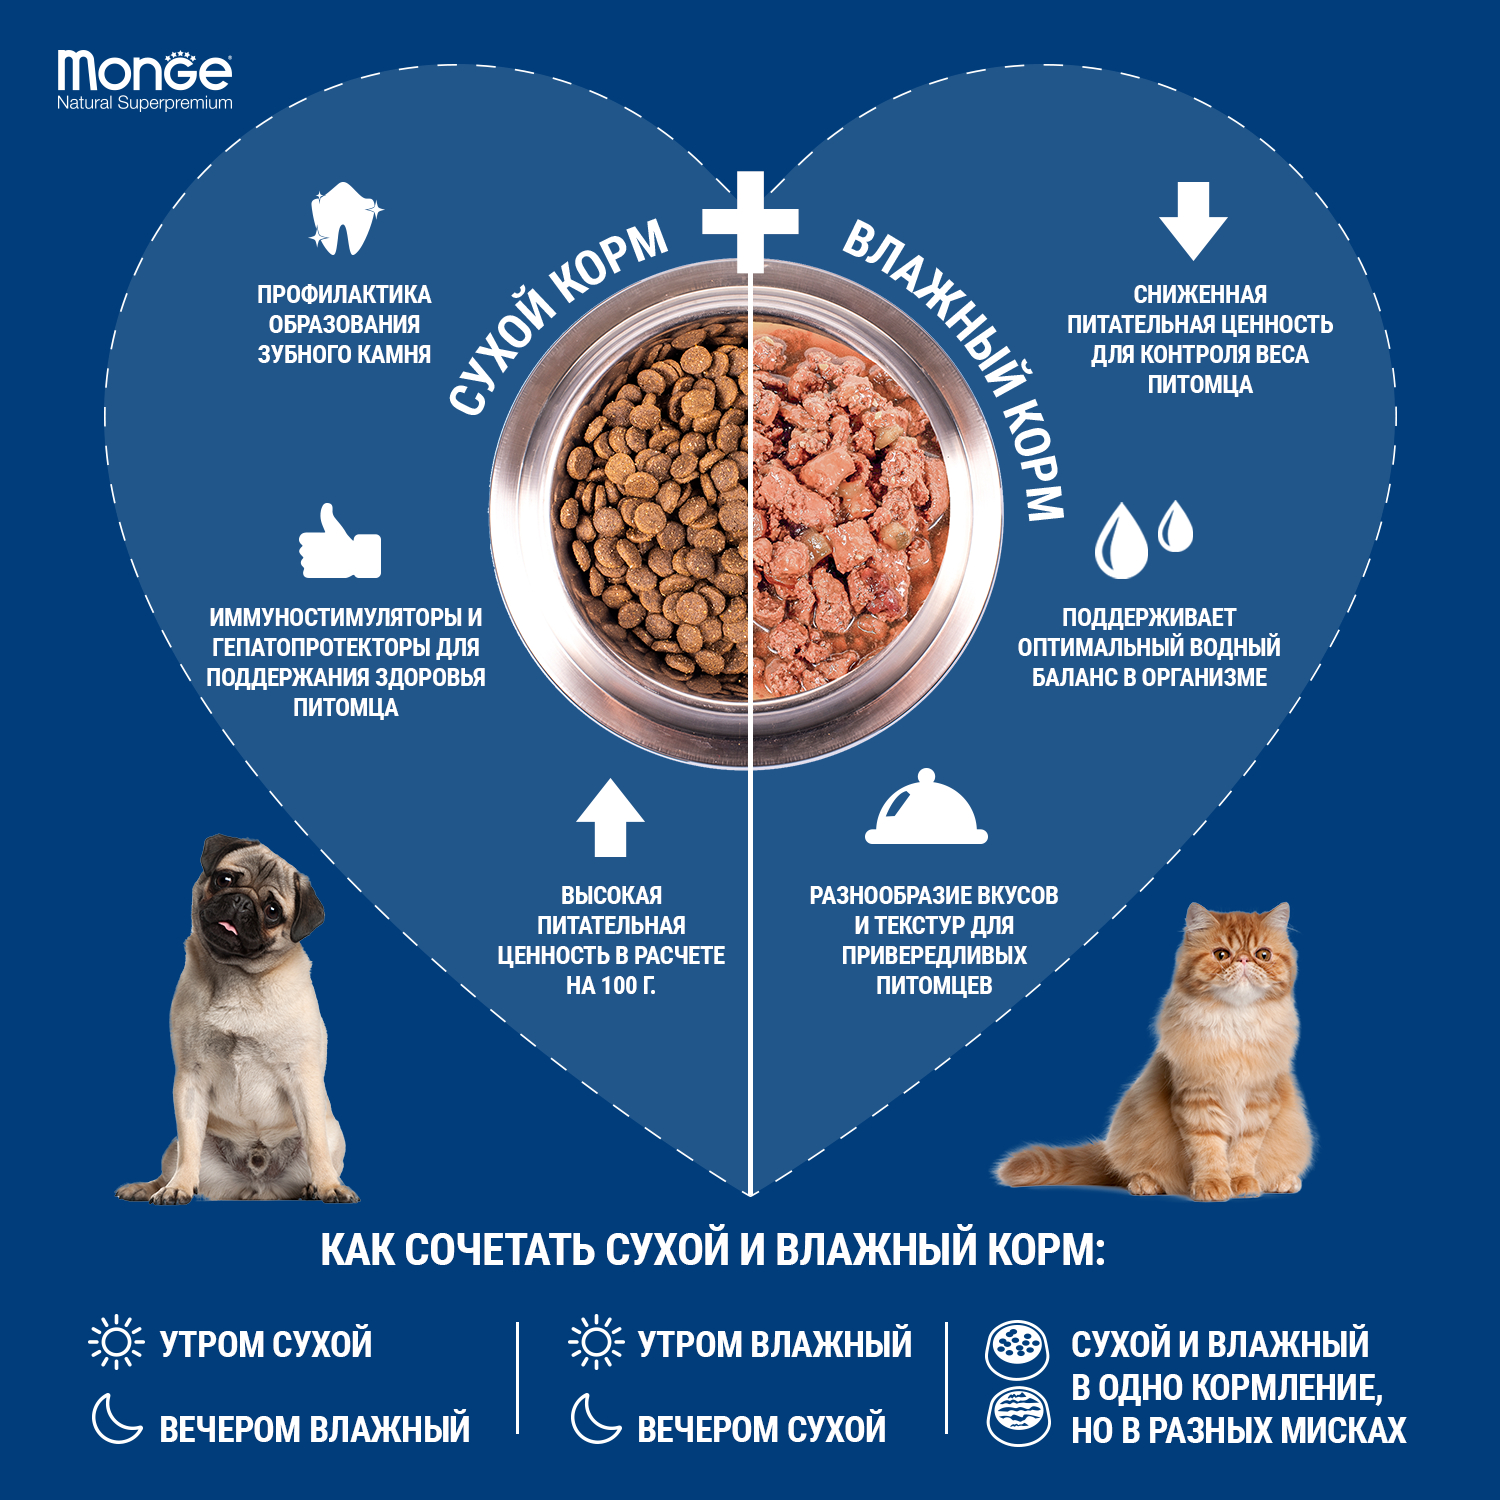 Сухой корм Monge Dog Speciality Line Monoprotein Puppy&Junior корм для щенков всех пород, из лосося с рисом 12 кг